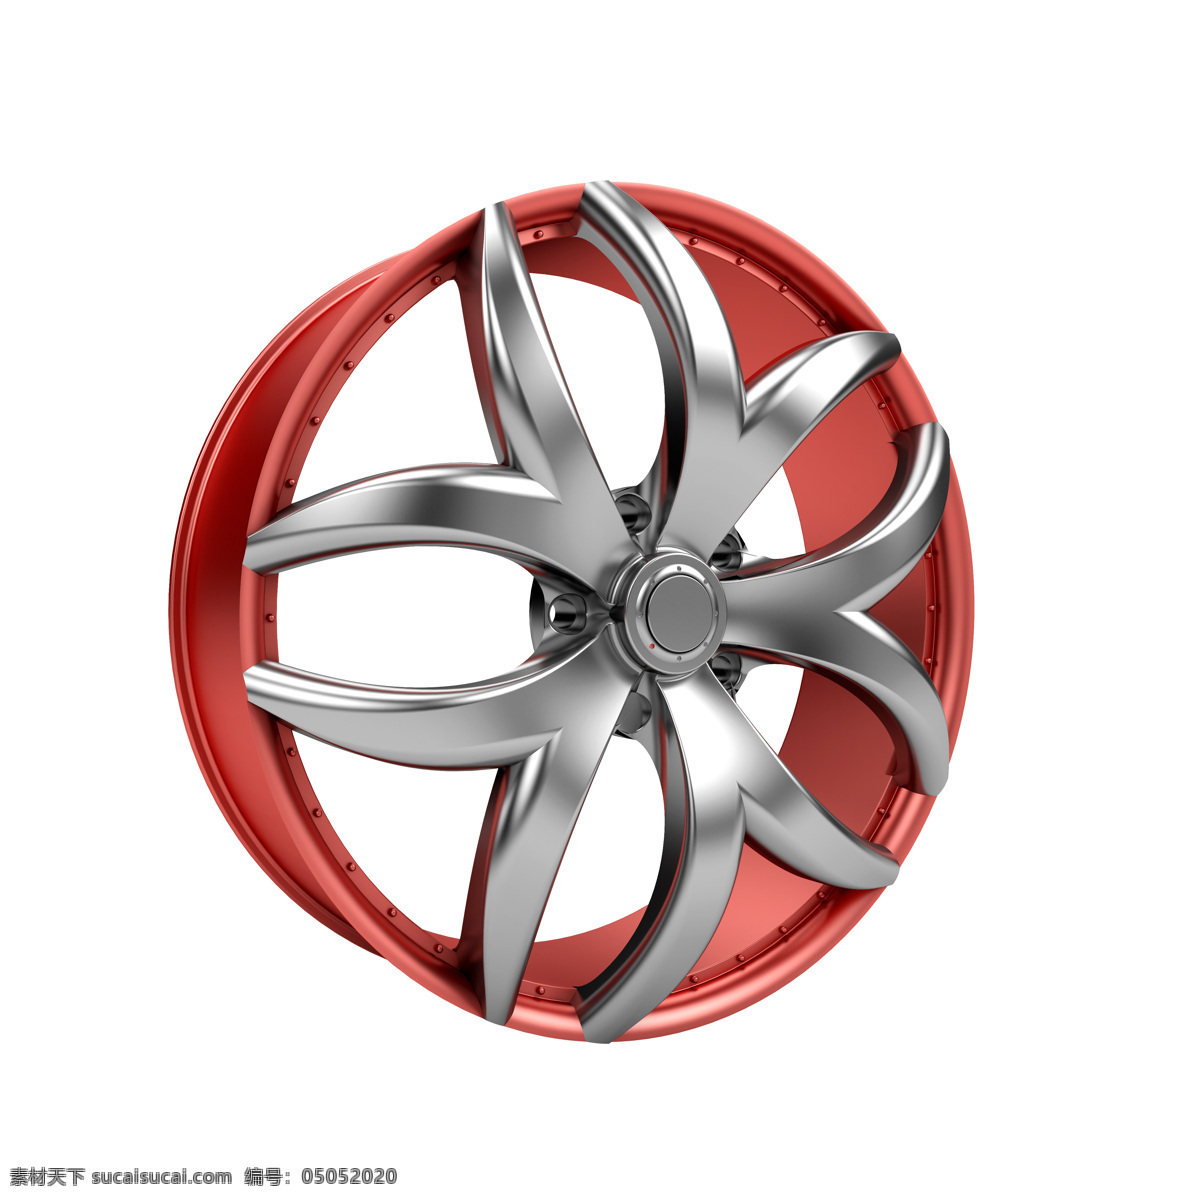 轮毂 红色轮毂 车轮 轿车轮毂 汽车轮毂 汽车零件 轿车配件 汽配 轮毂模型 其他类别 生活百科 白色